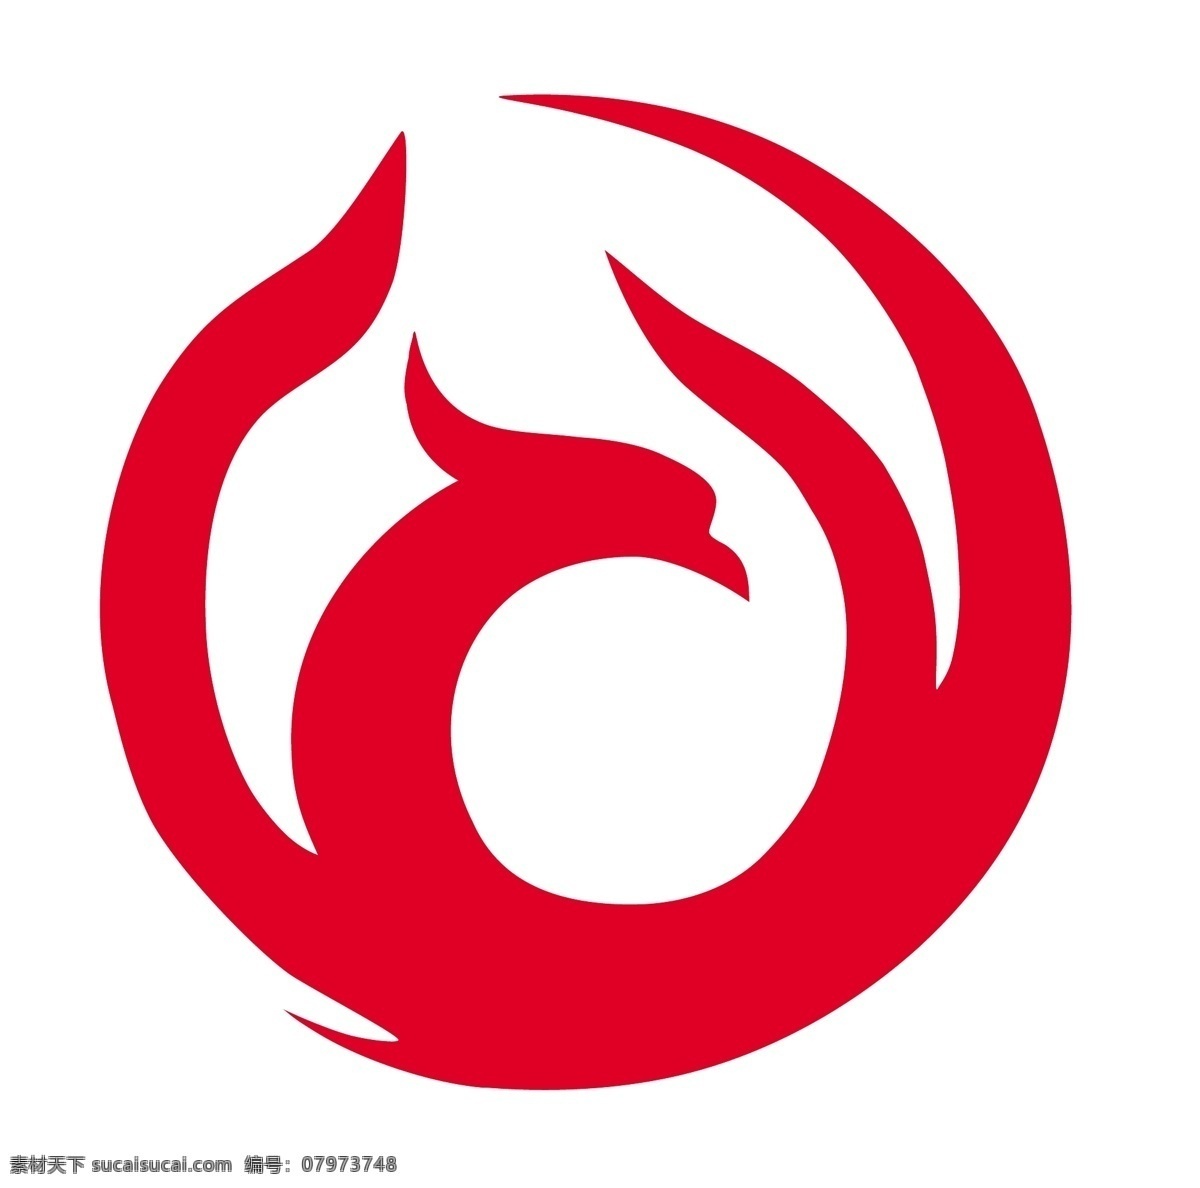 中裕燃气 标志 企业 logo 标识标志图标 矢量